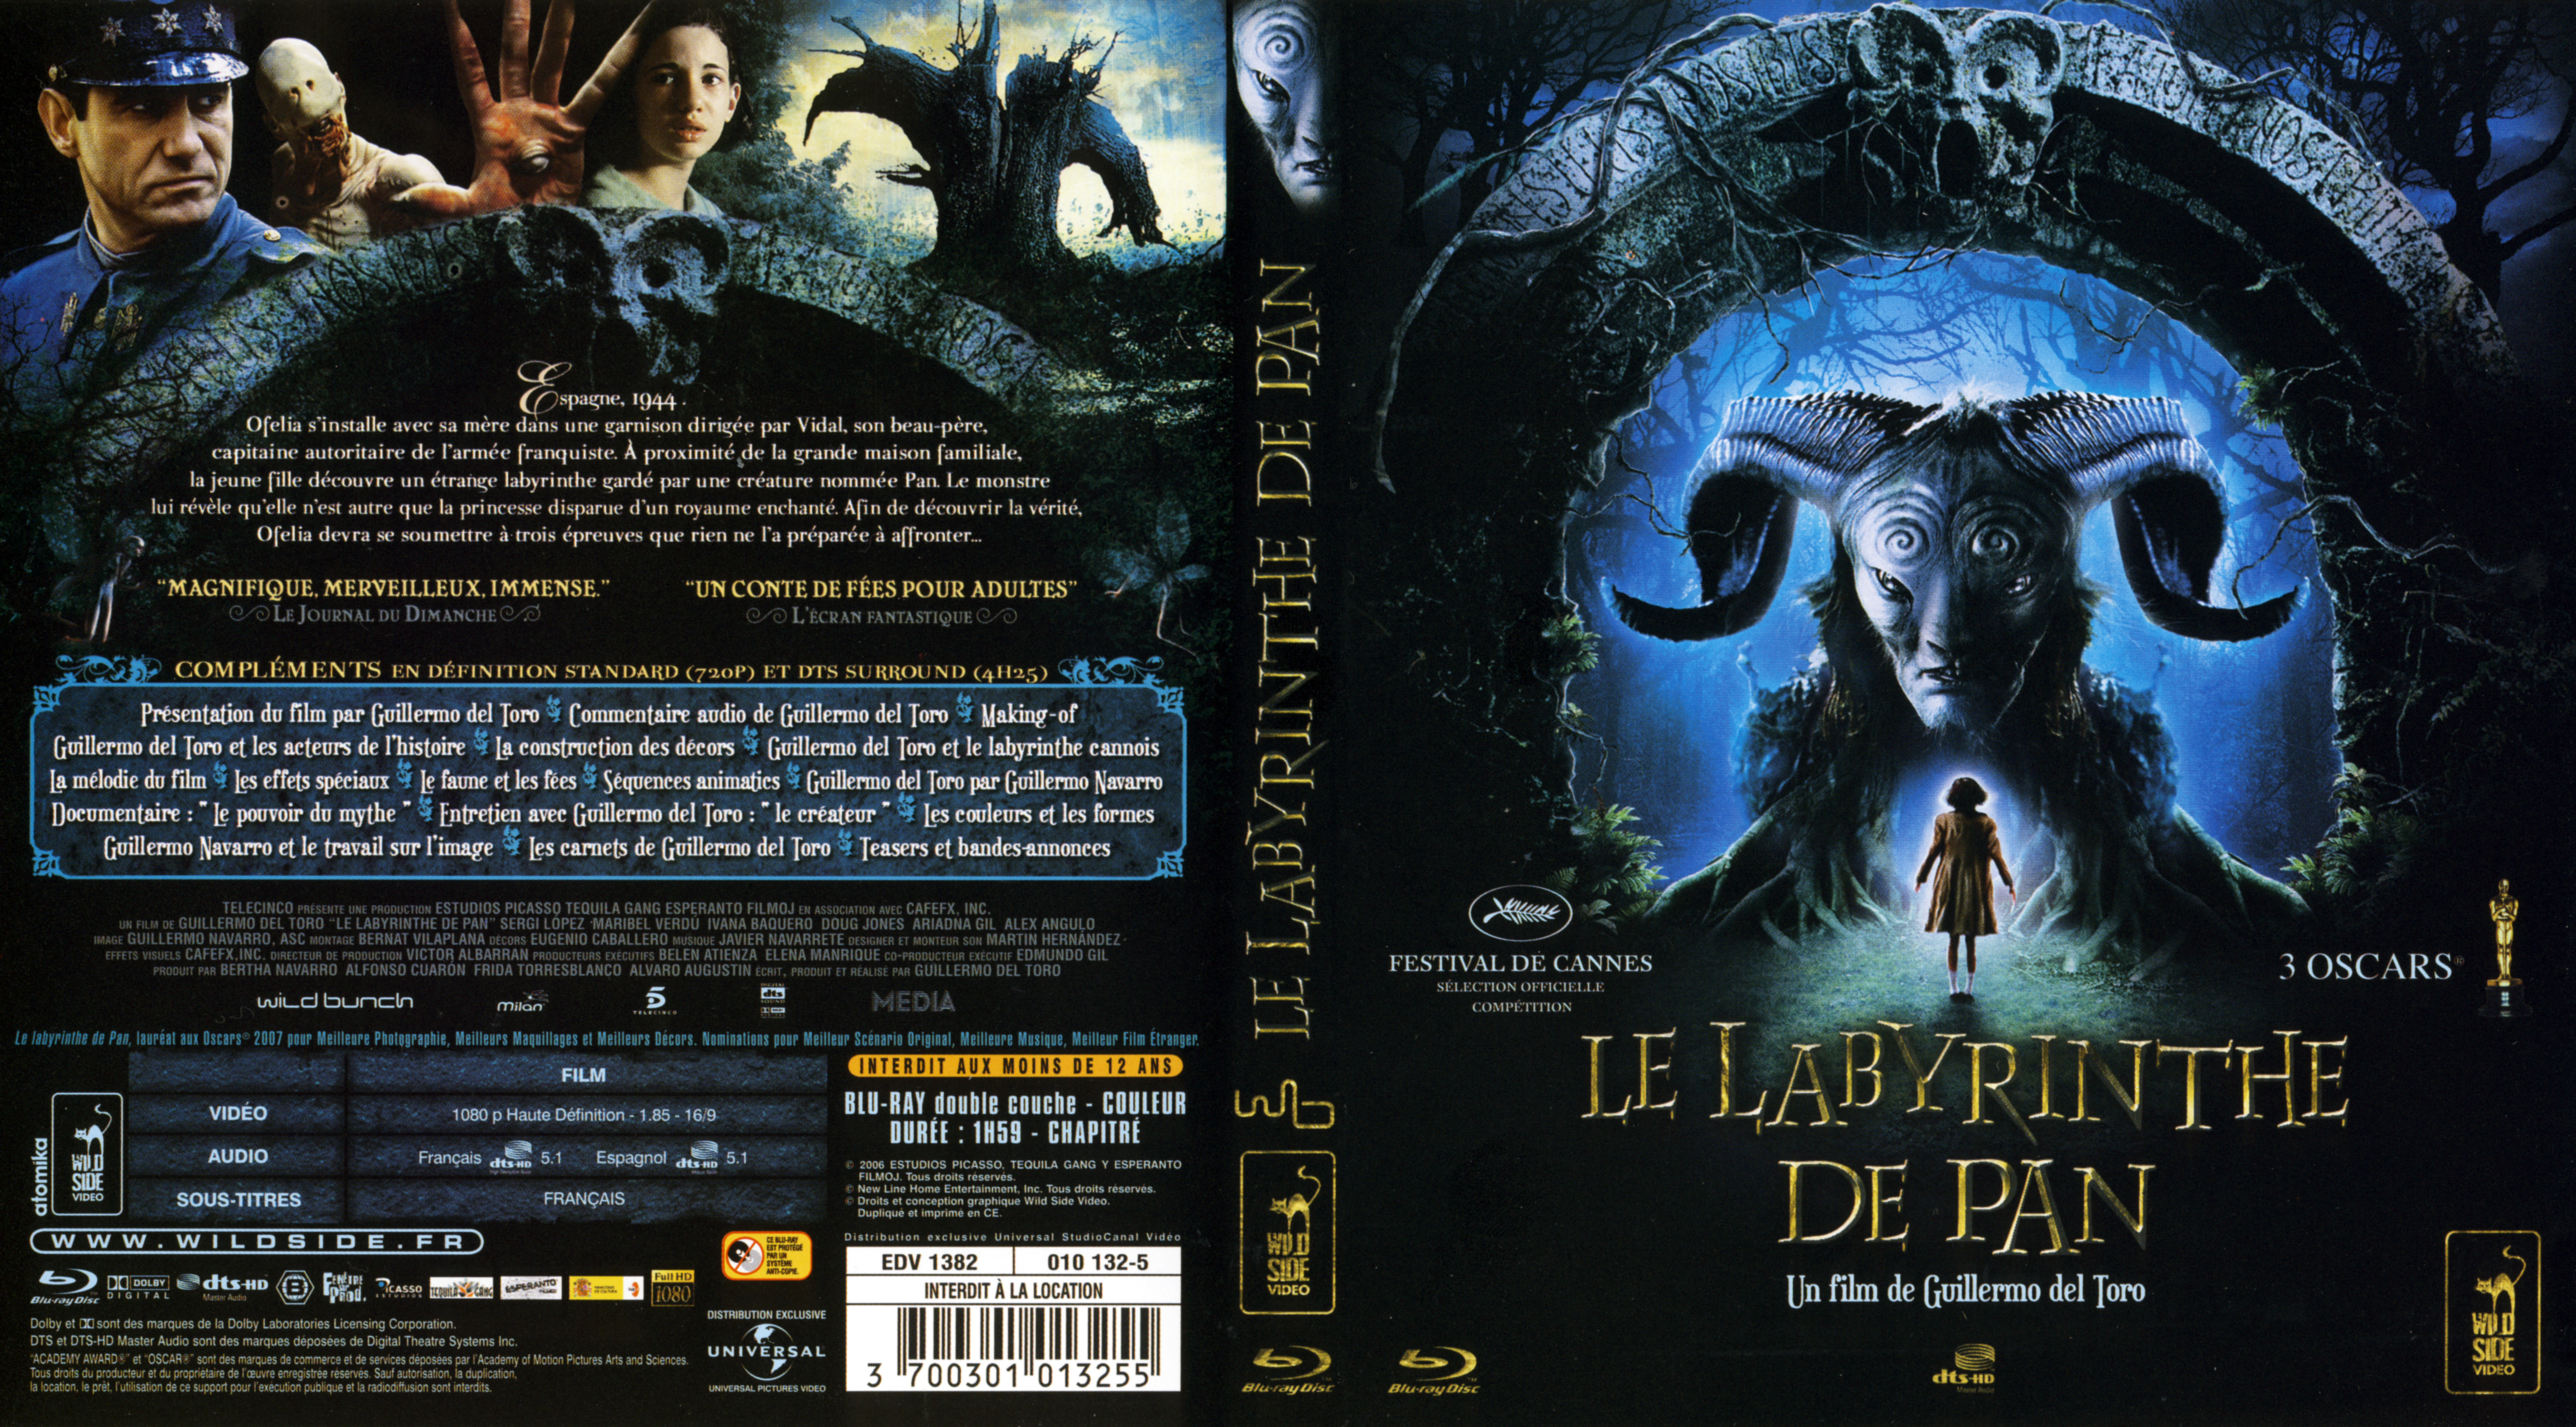 Jaquette DVD Le labyrinthe de pan (BLU-RAY)